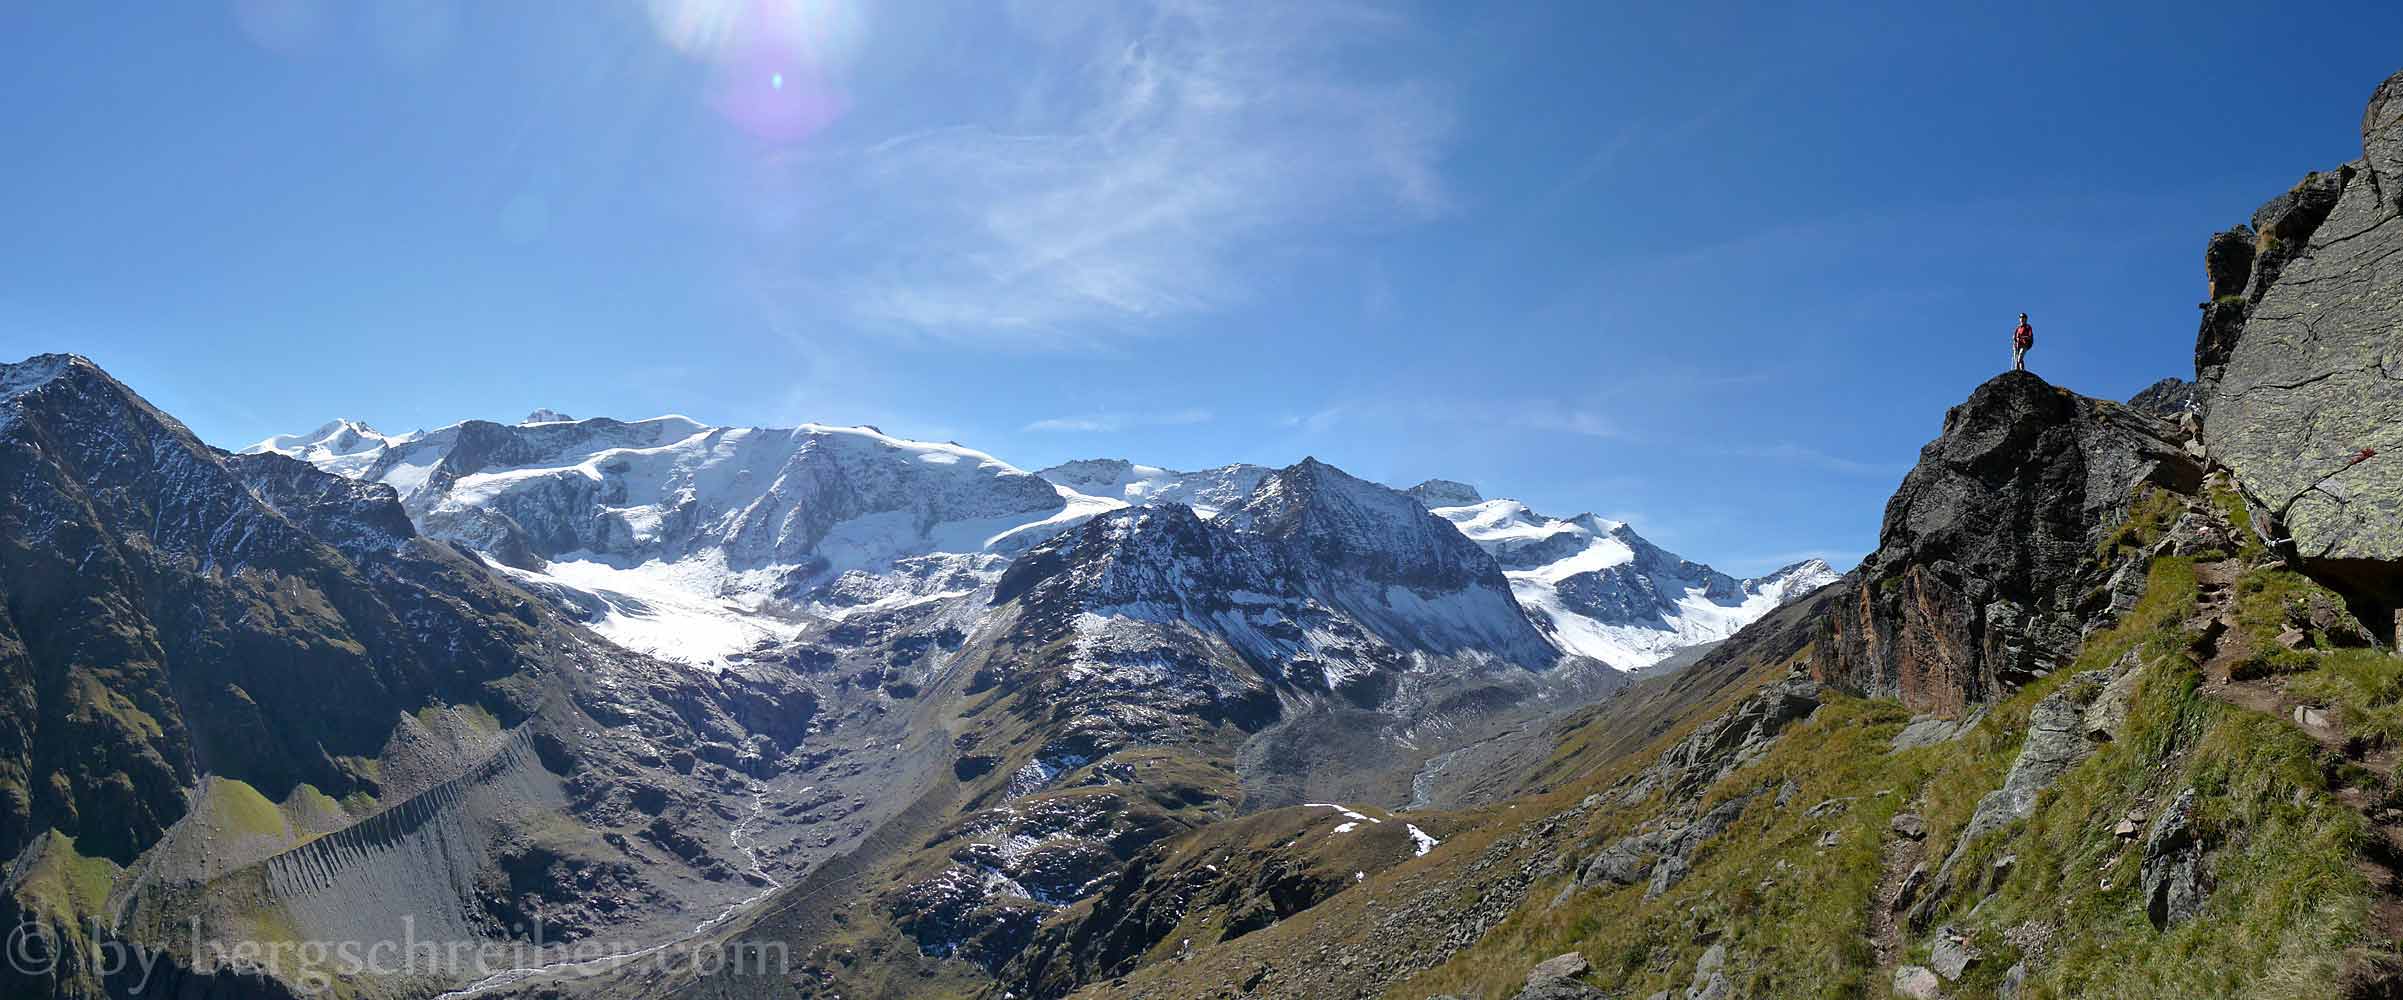 Fuldaer Höhenweg, vom Rifflsee zum Taschachhaus im Angesicht der Wildspitze und der (schwindenden) Ötztaler Gletscher.